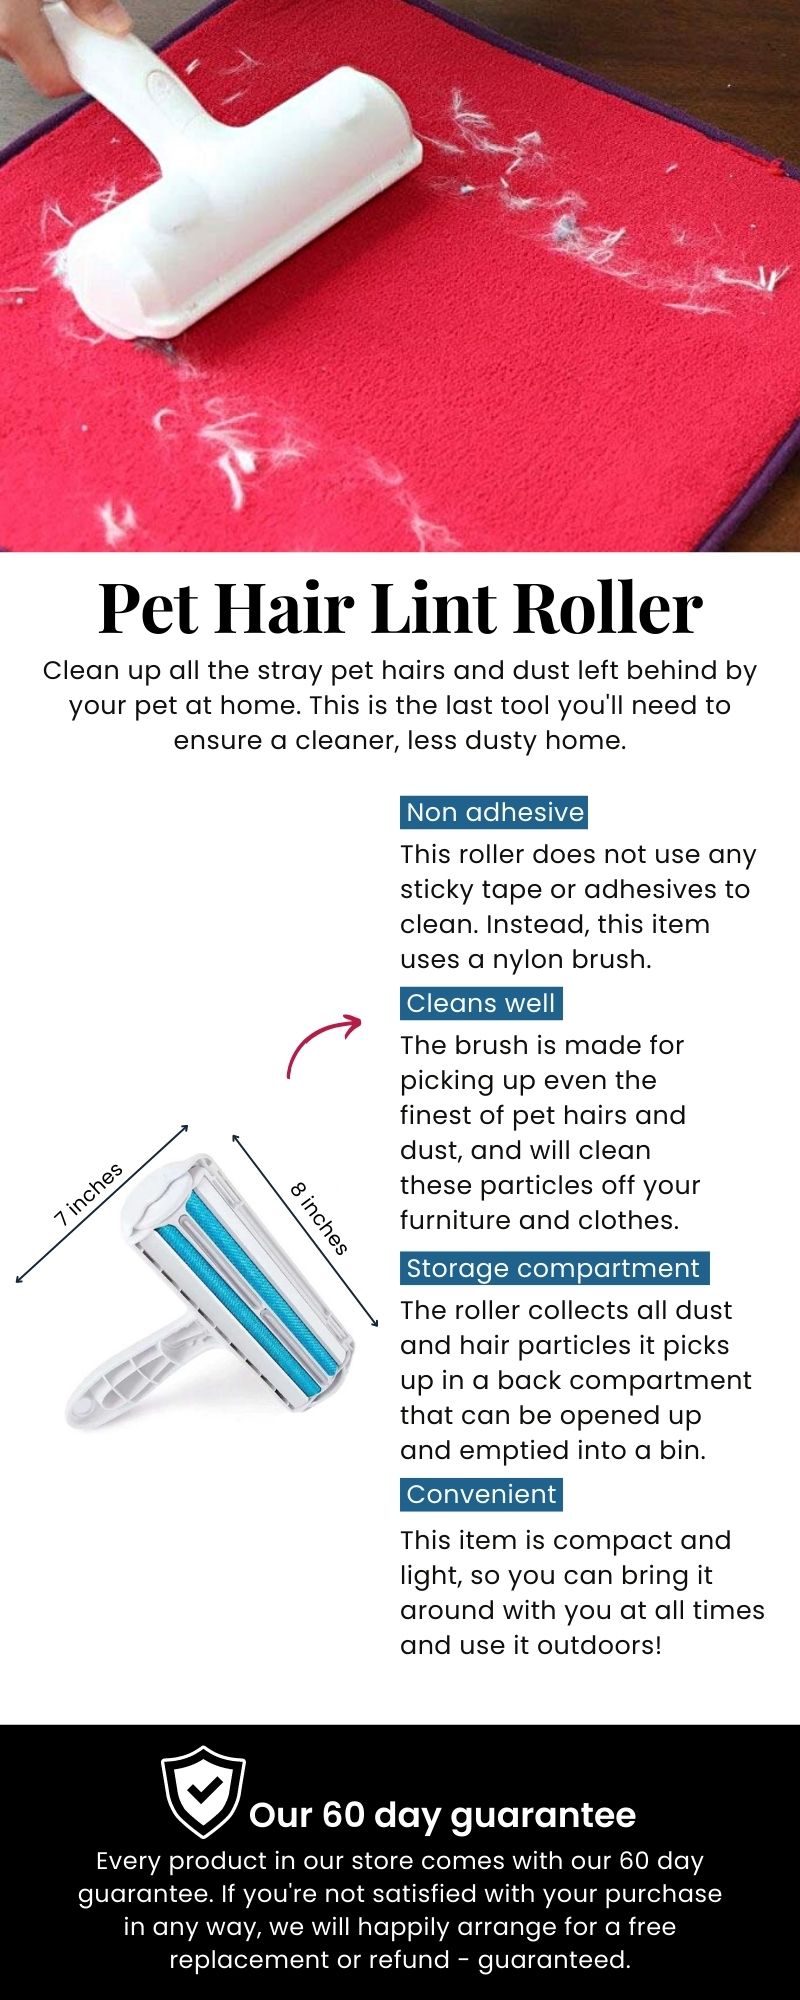 Pet Hair Lint Roller